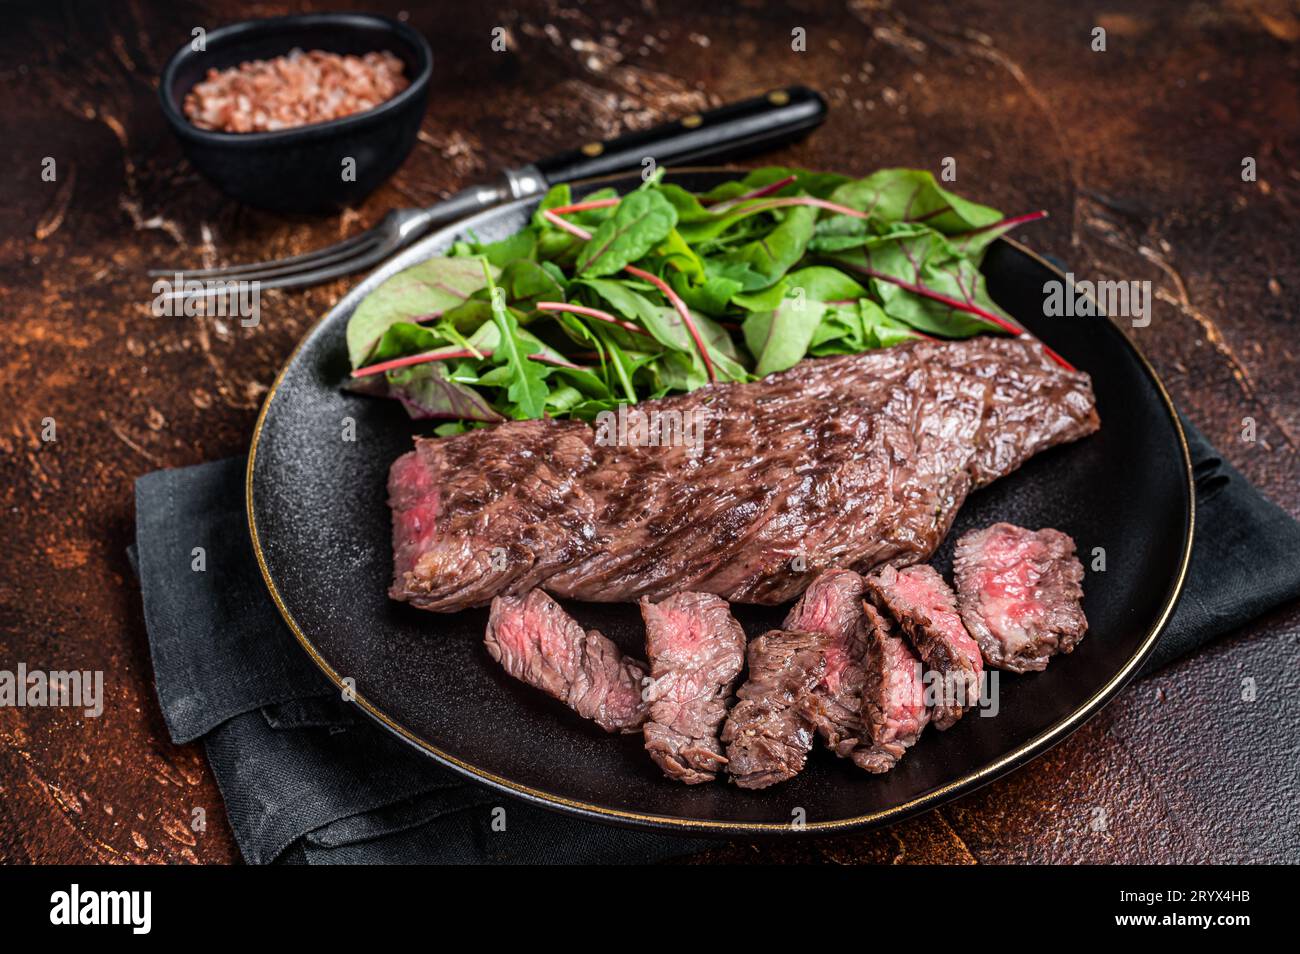 Juteux Grilled machete juteuse jupe boeuf viande steak sur l'assiette avec salade. Arrière-plan sombre. Vue de dessus. Banque D'Images